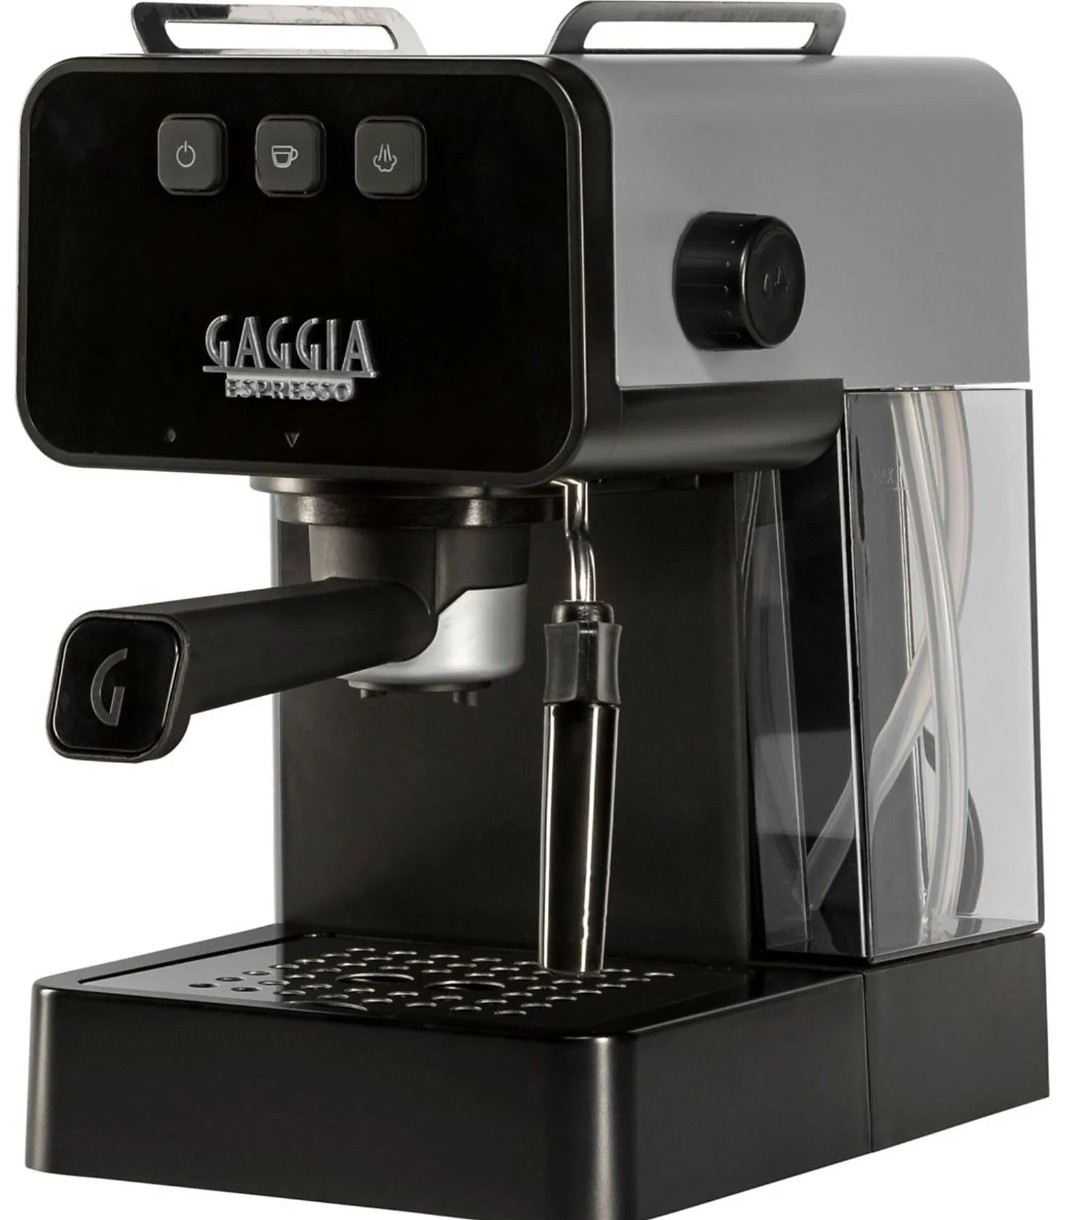 Cafetiera electrica Gaggia Espresso Deluxe EG2111/64